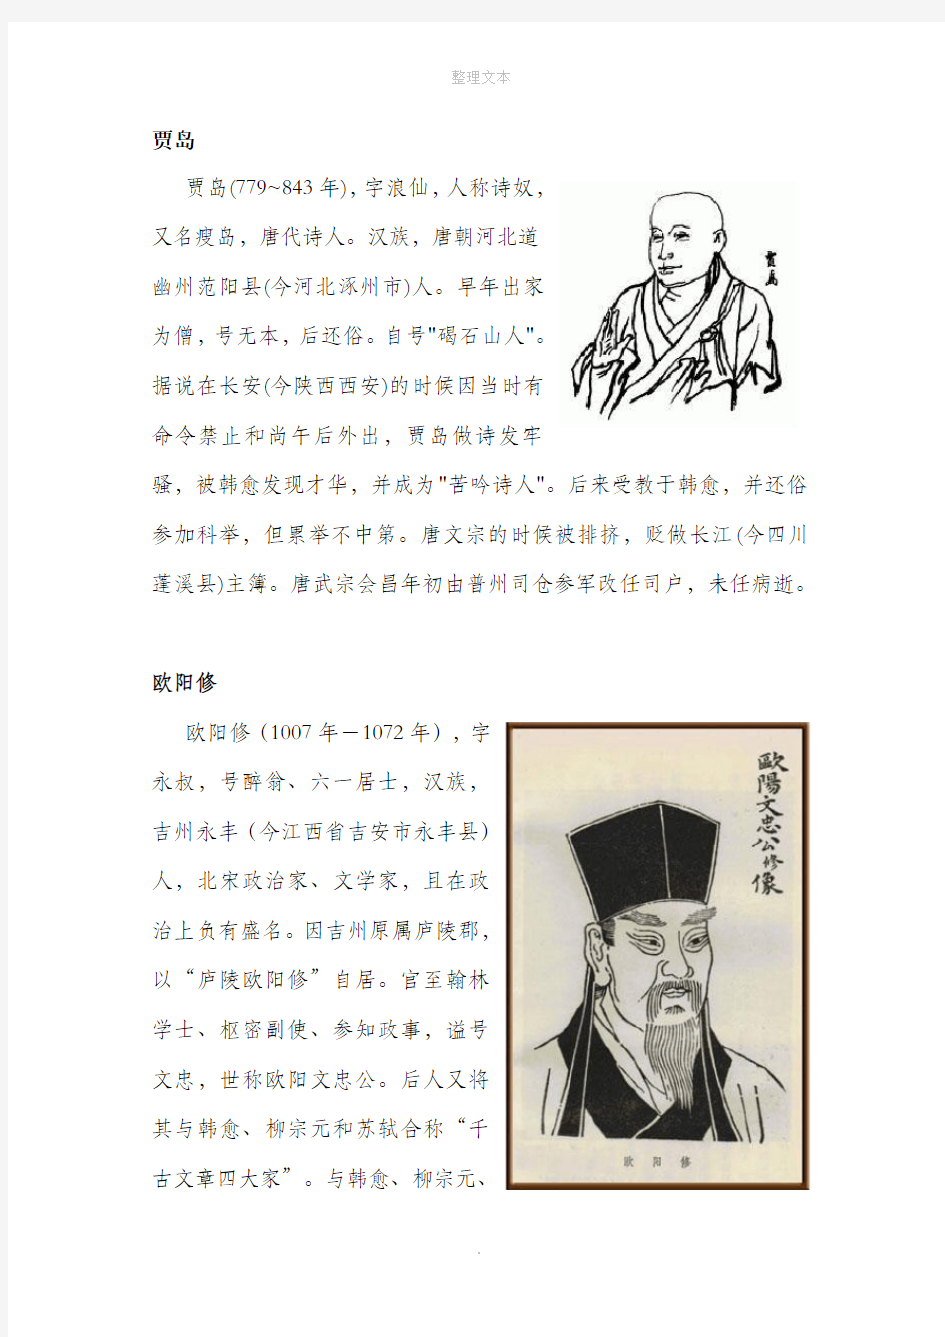 中国古代文学家小故事(三则)(相关资料)